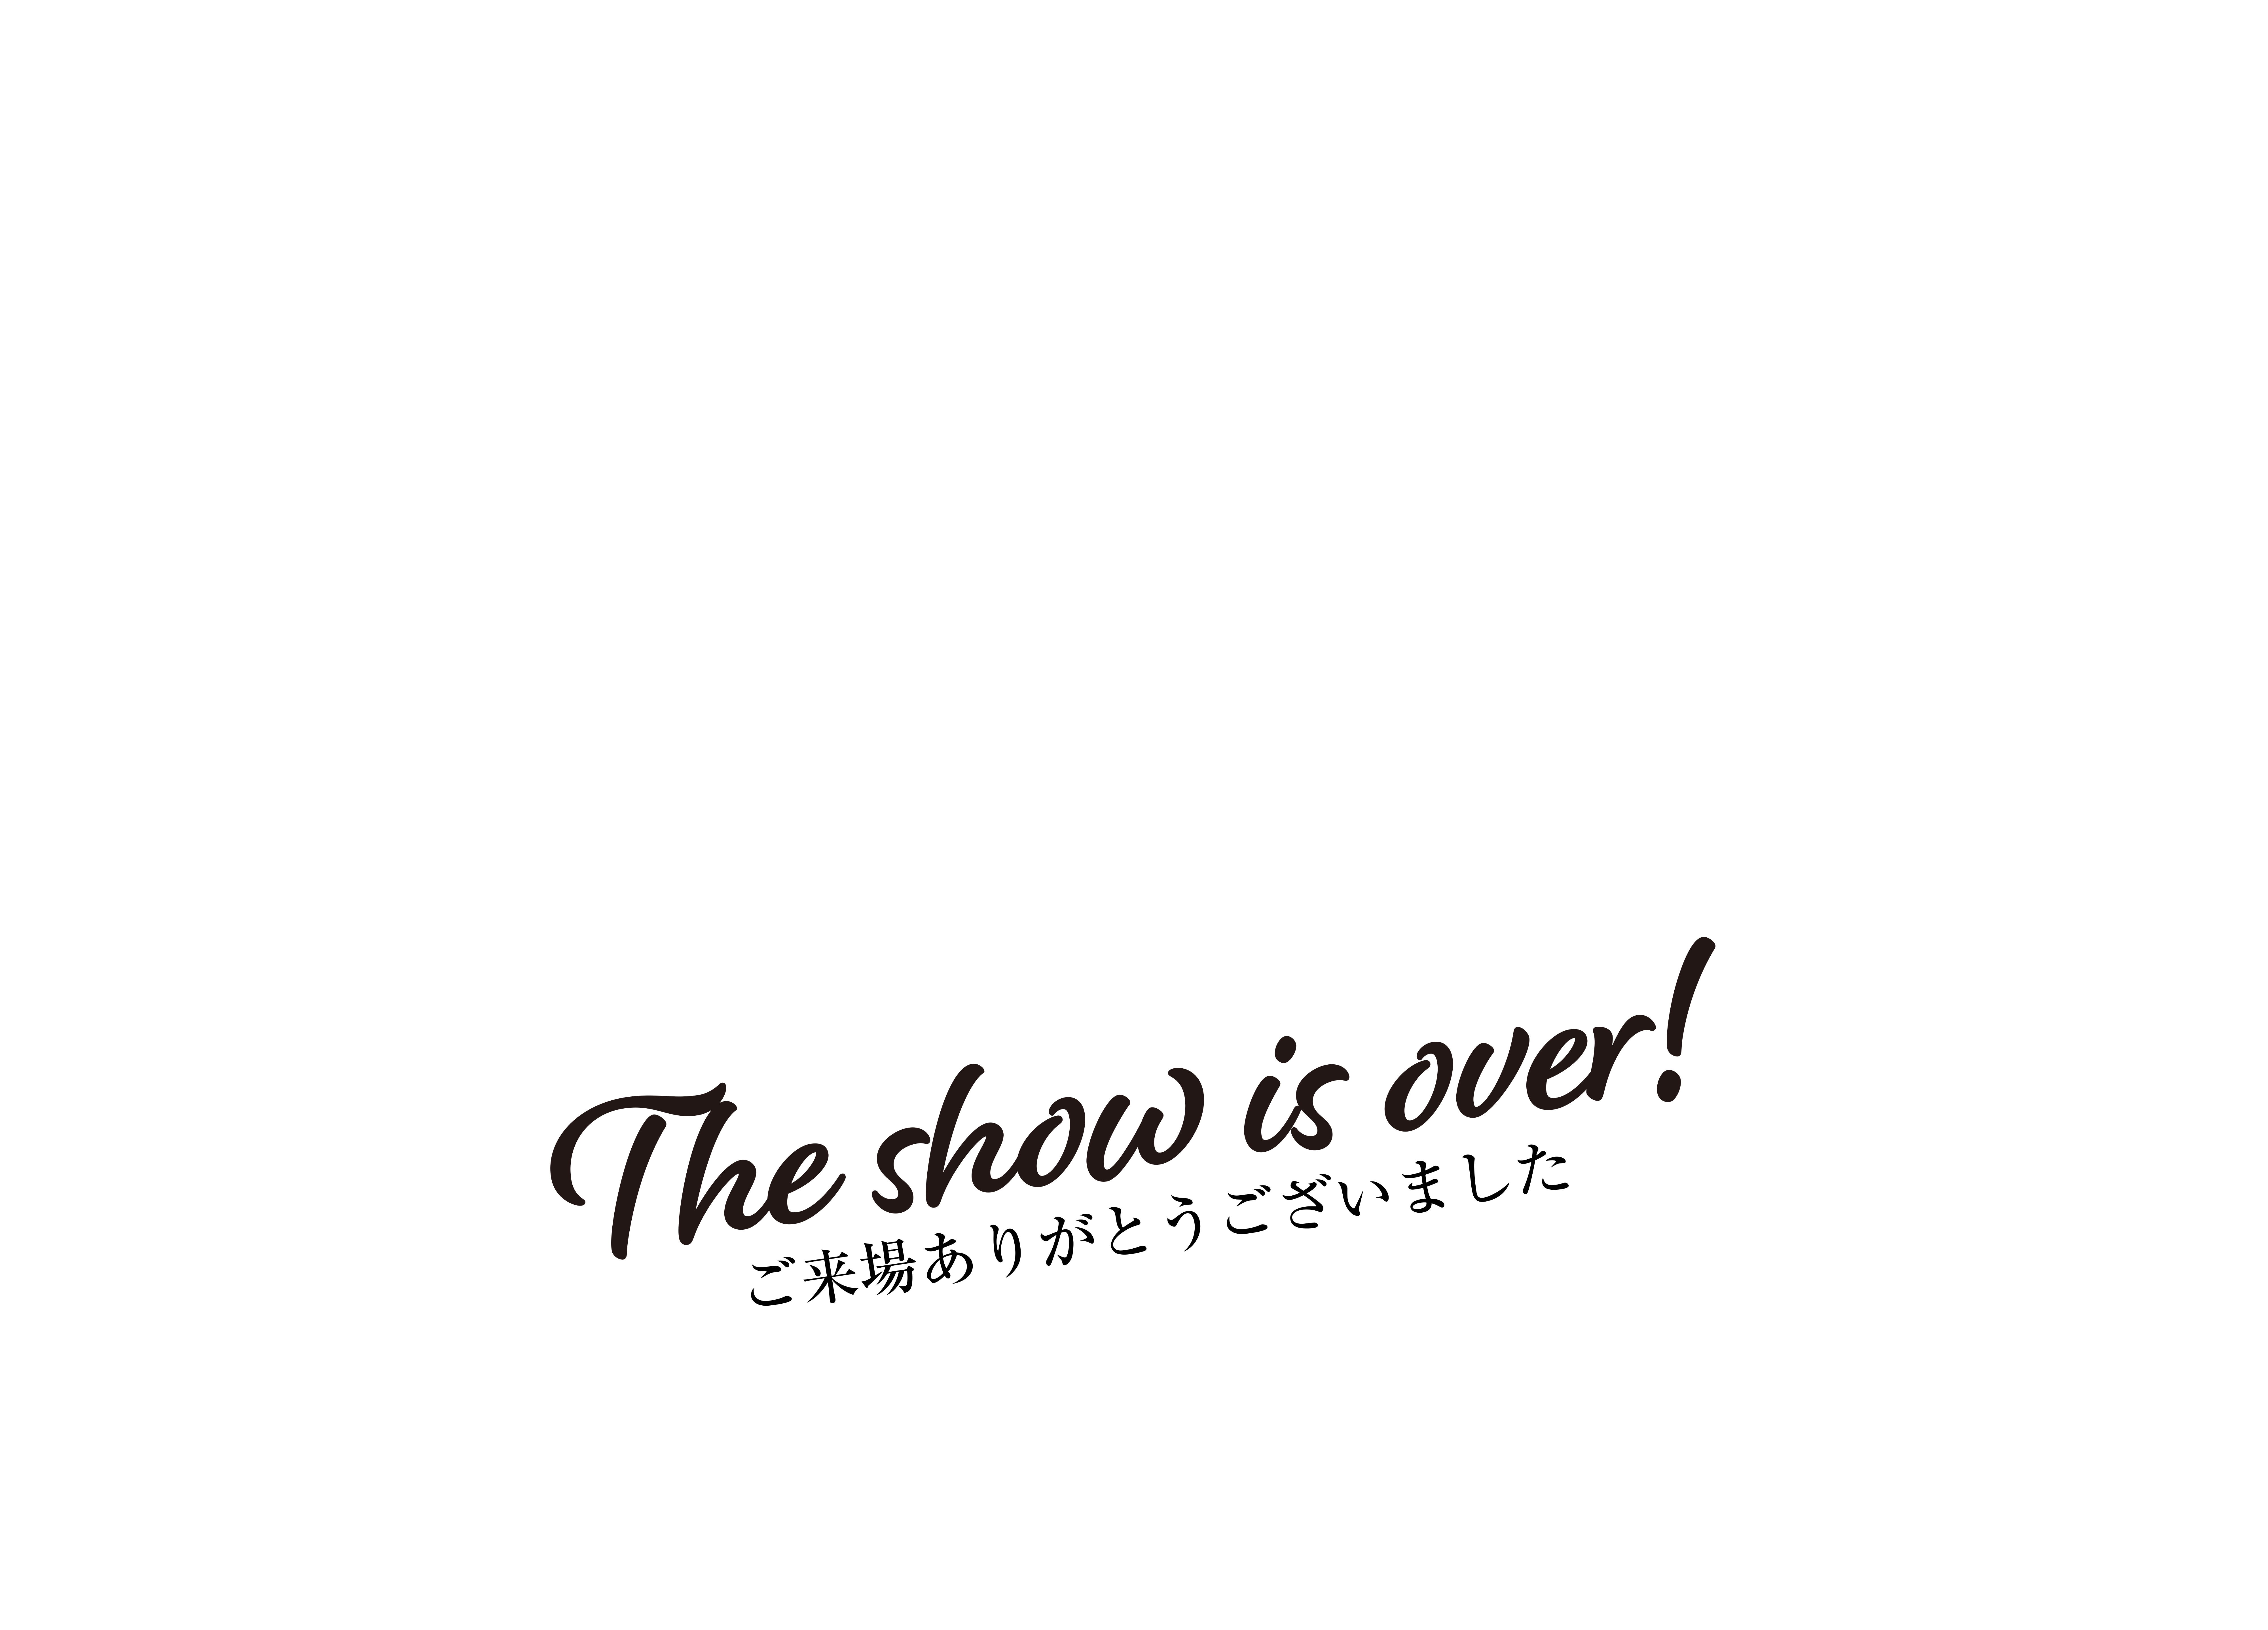 2022.10.24(mon) 国立文楽劇場にて